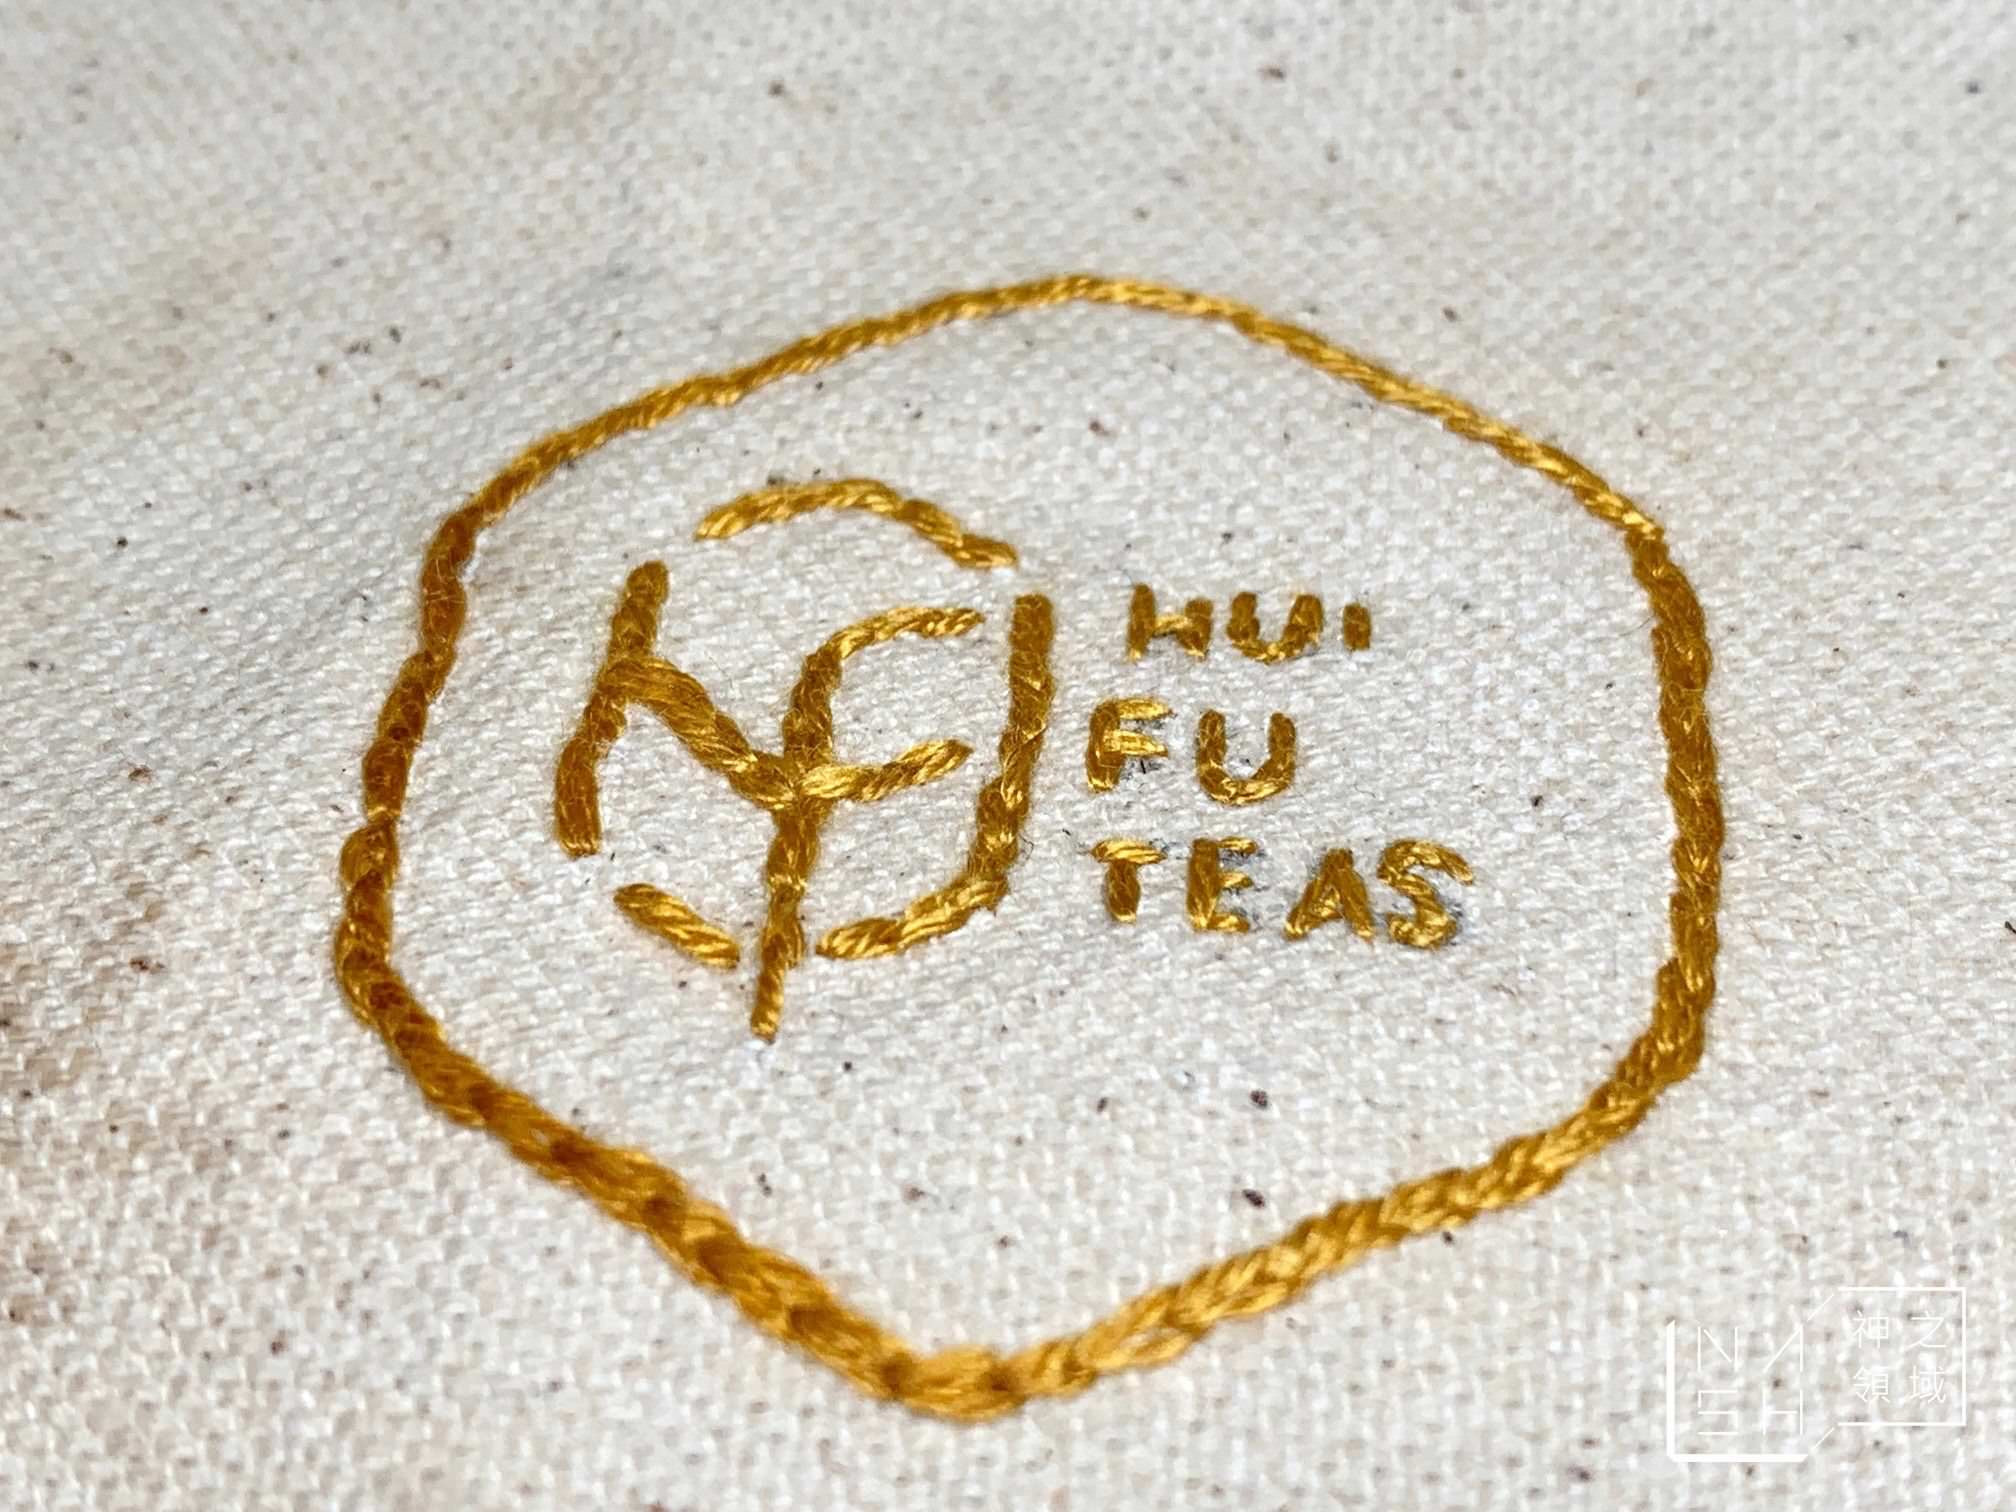 薈福村茶